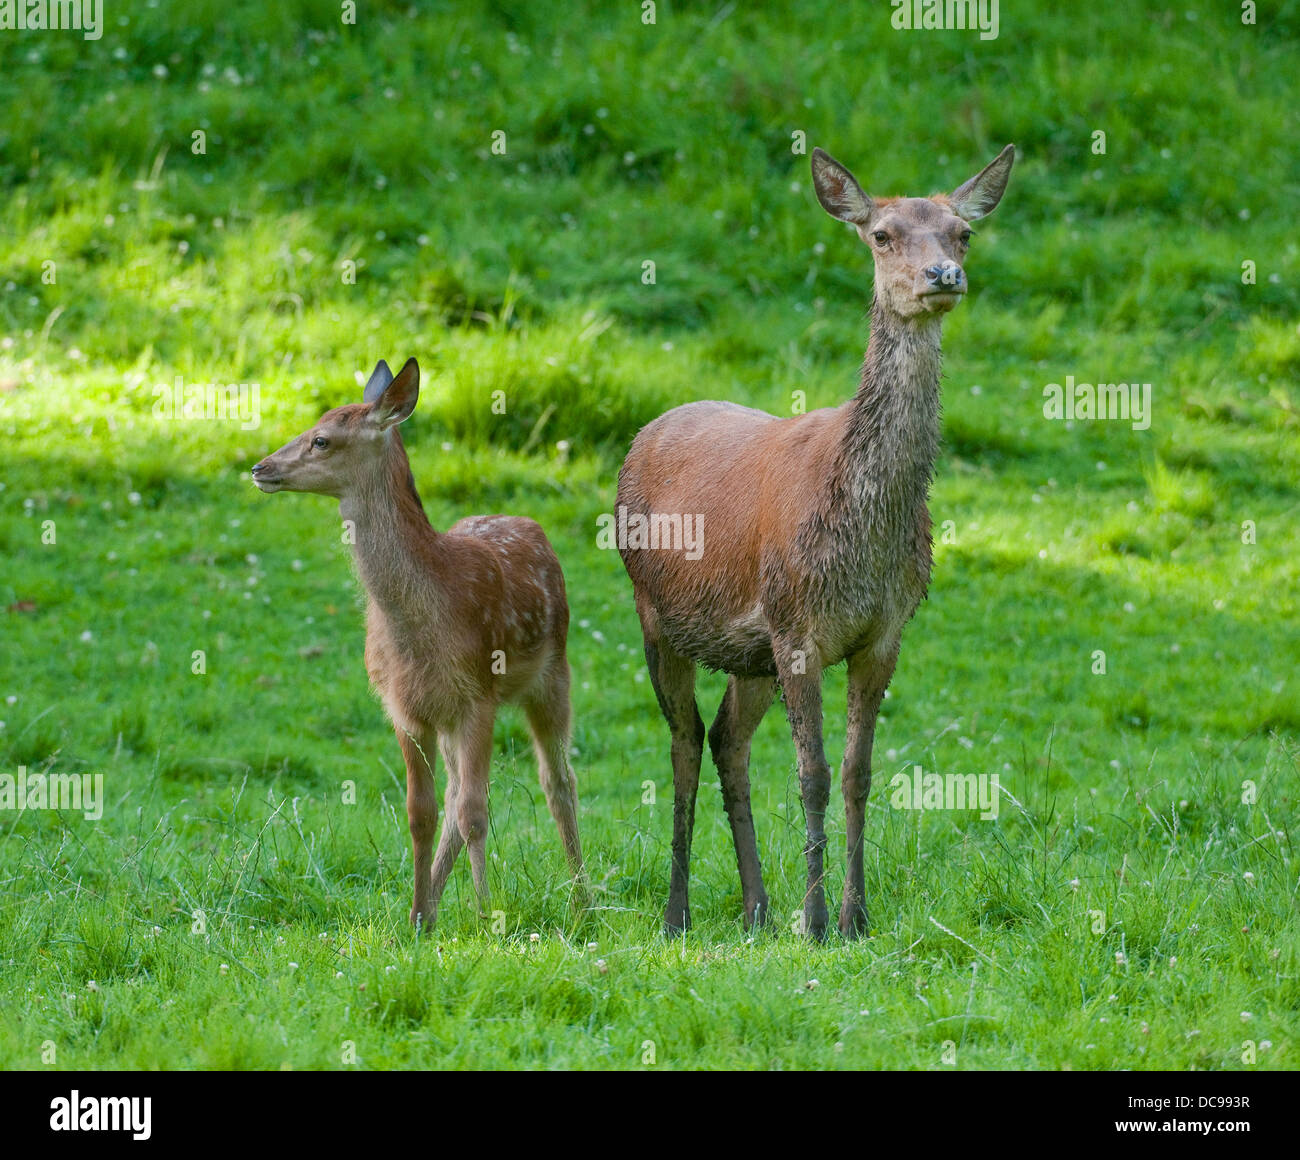 Il cervo (Cervus elaphus), hind e fawn in piedi su un prato, captive Foto Stock